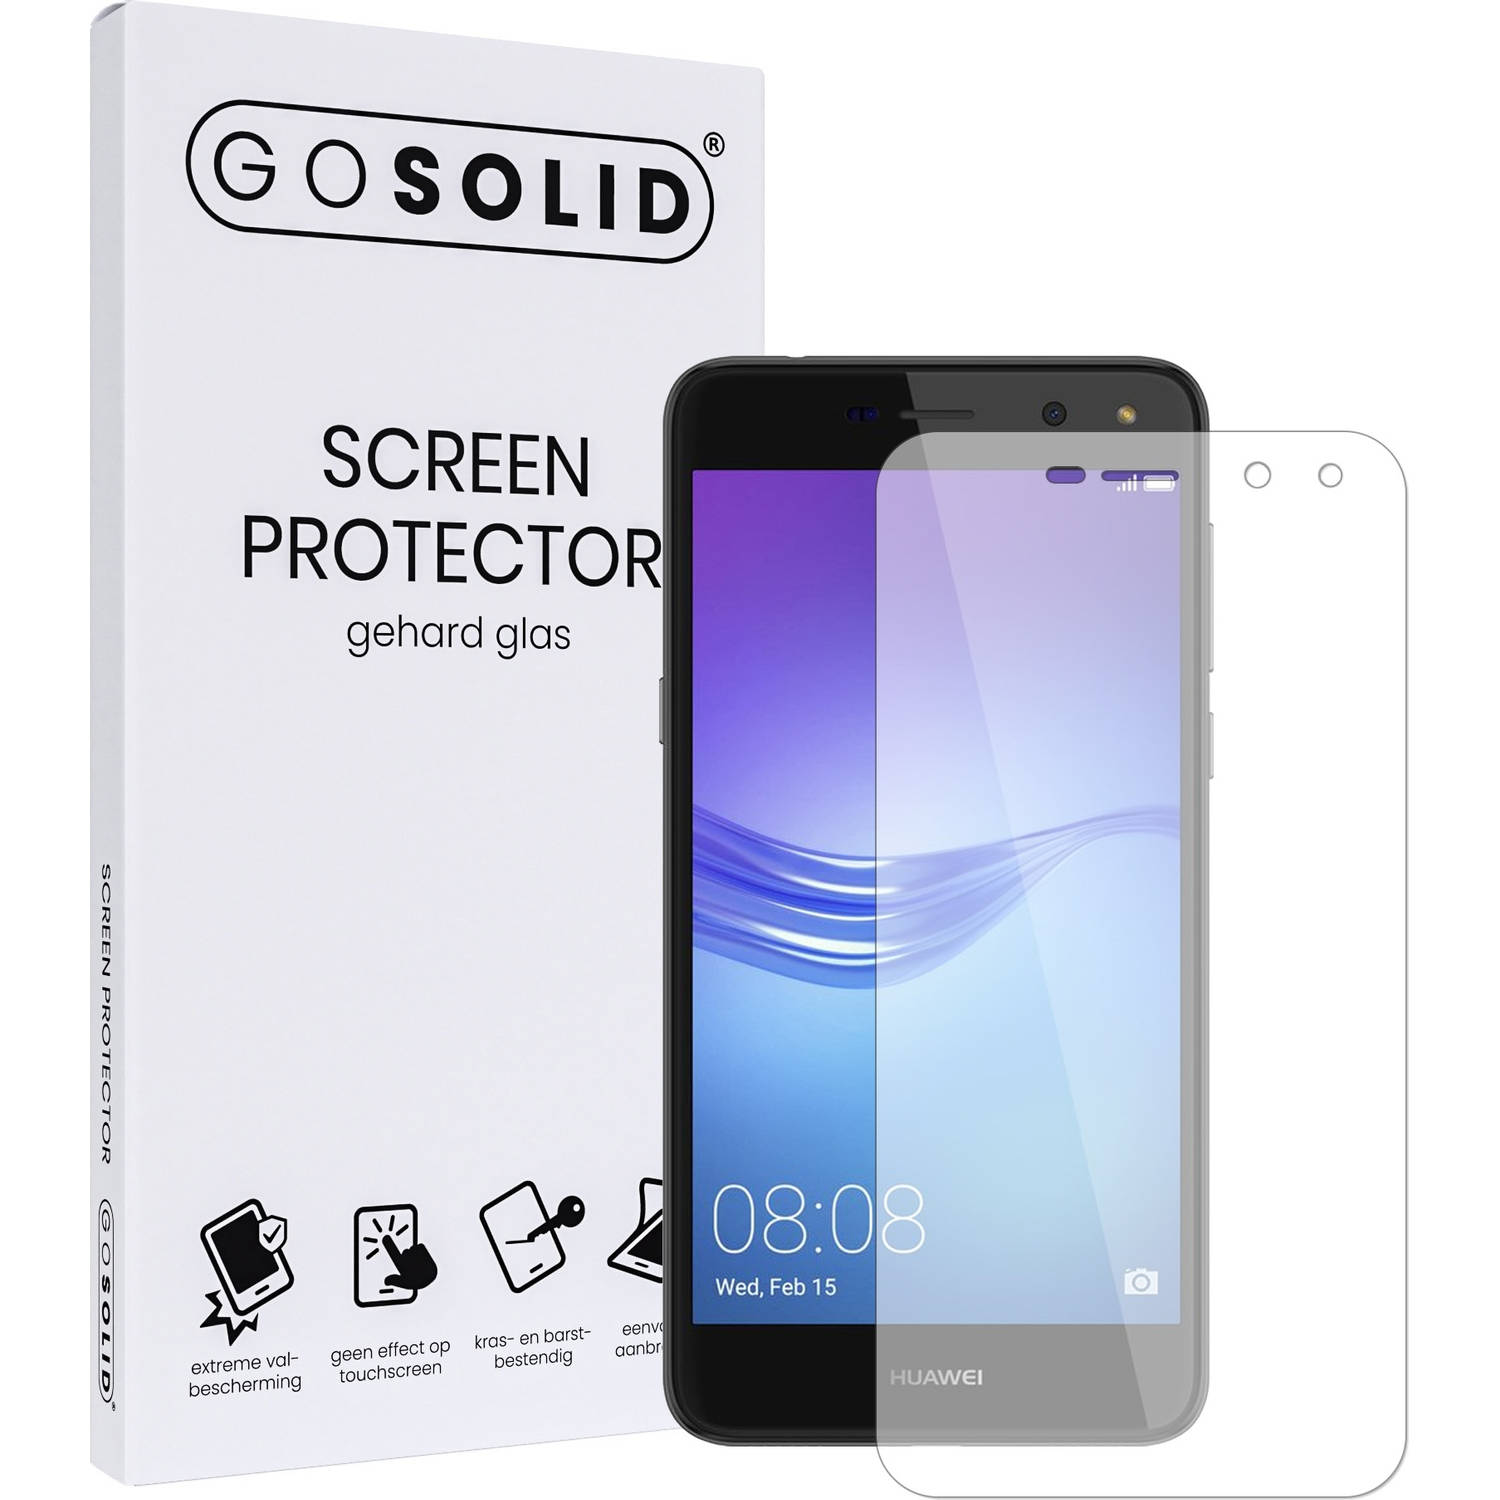 GO SOLID! ® Screenprotector Huawei Y6 (2018) - gehard glas